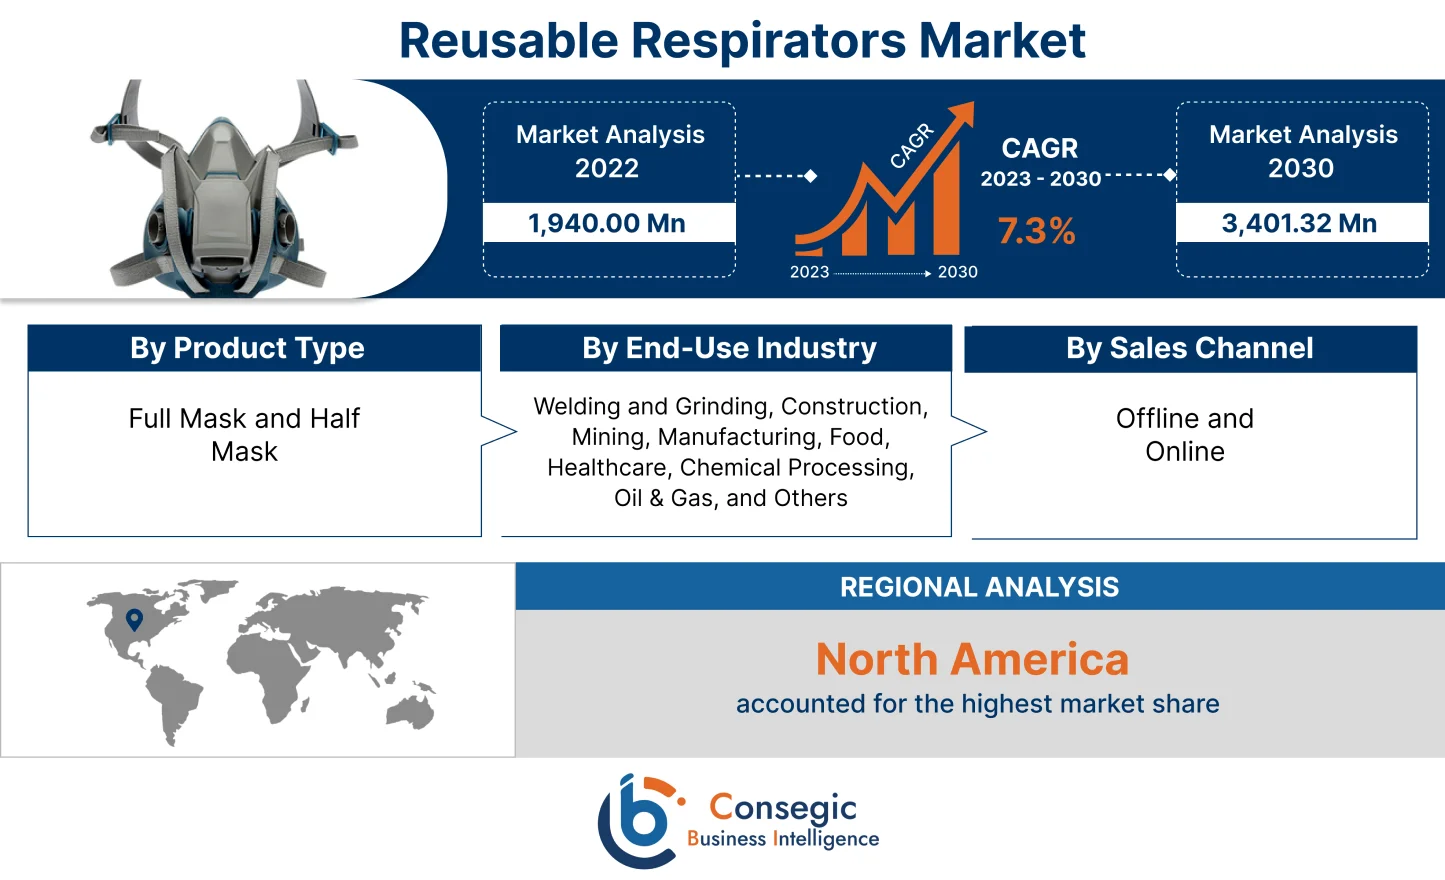 Reusable Respirators Market